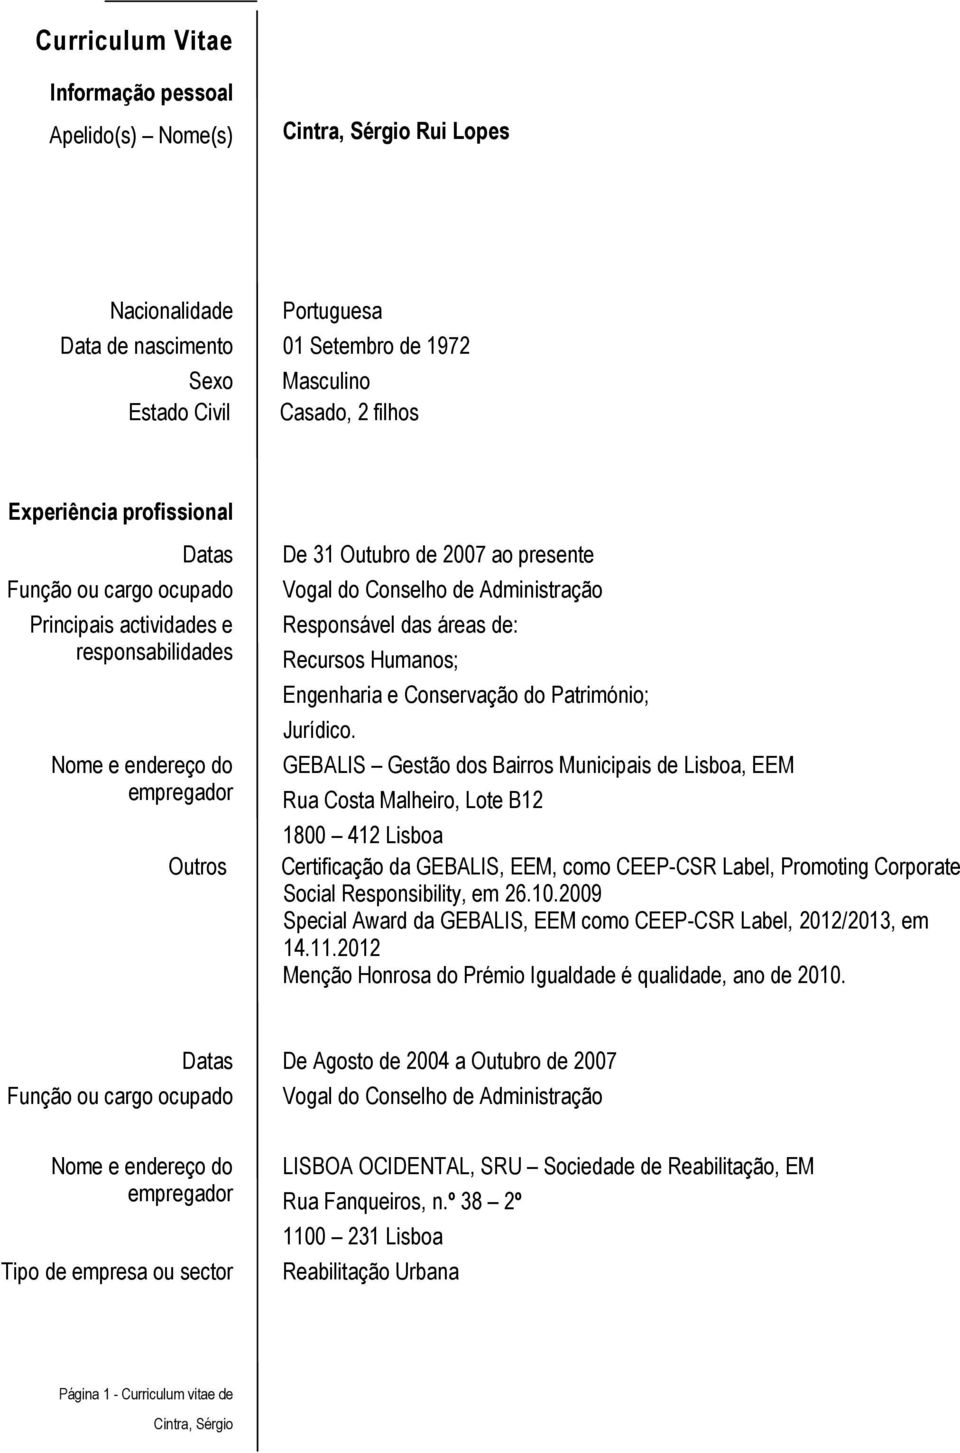 GEBALIS Gestão dos Bairros Municipais de Lisboa, EEM Rua Costa Malheiro, Lote B12 1800 412 Lisboa Certificação da GEBALIS, EEM, como CEEP-CSR Label, Promoting Corporate Social Responsibility, em 26.